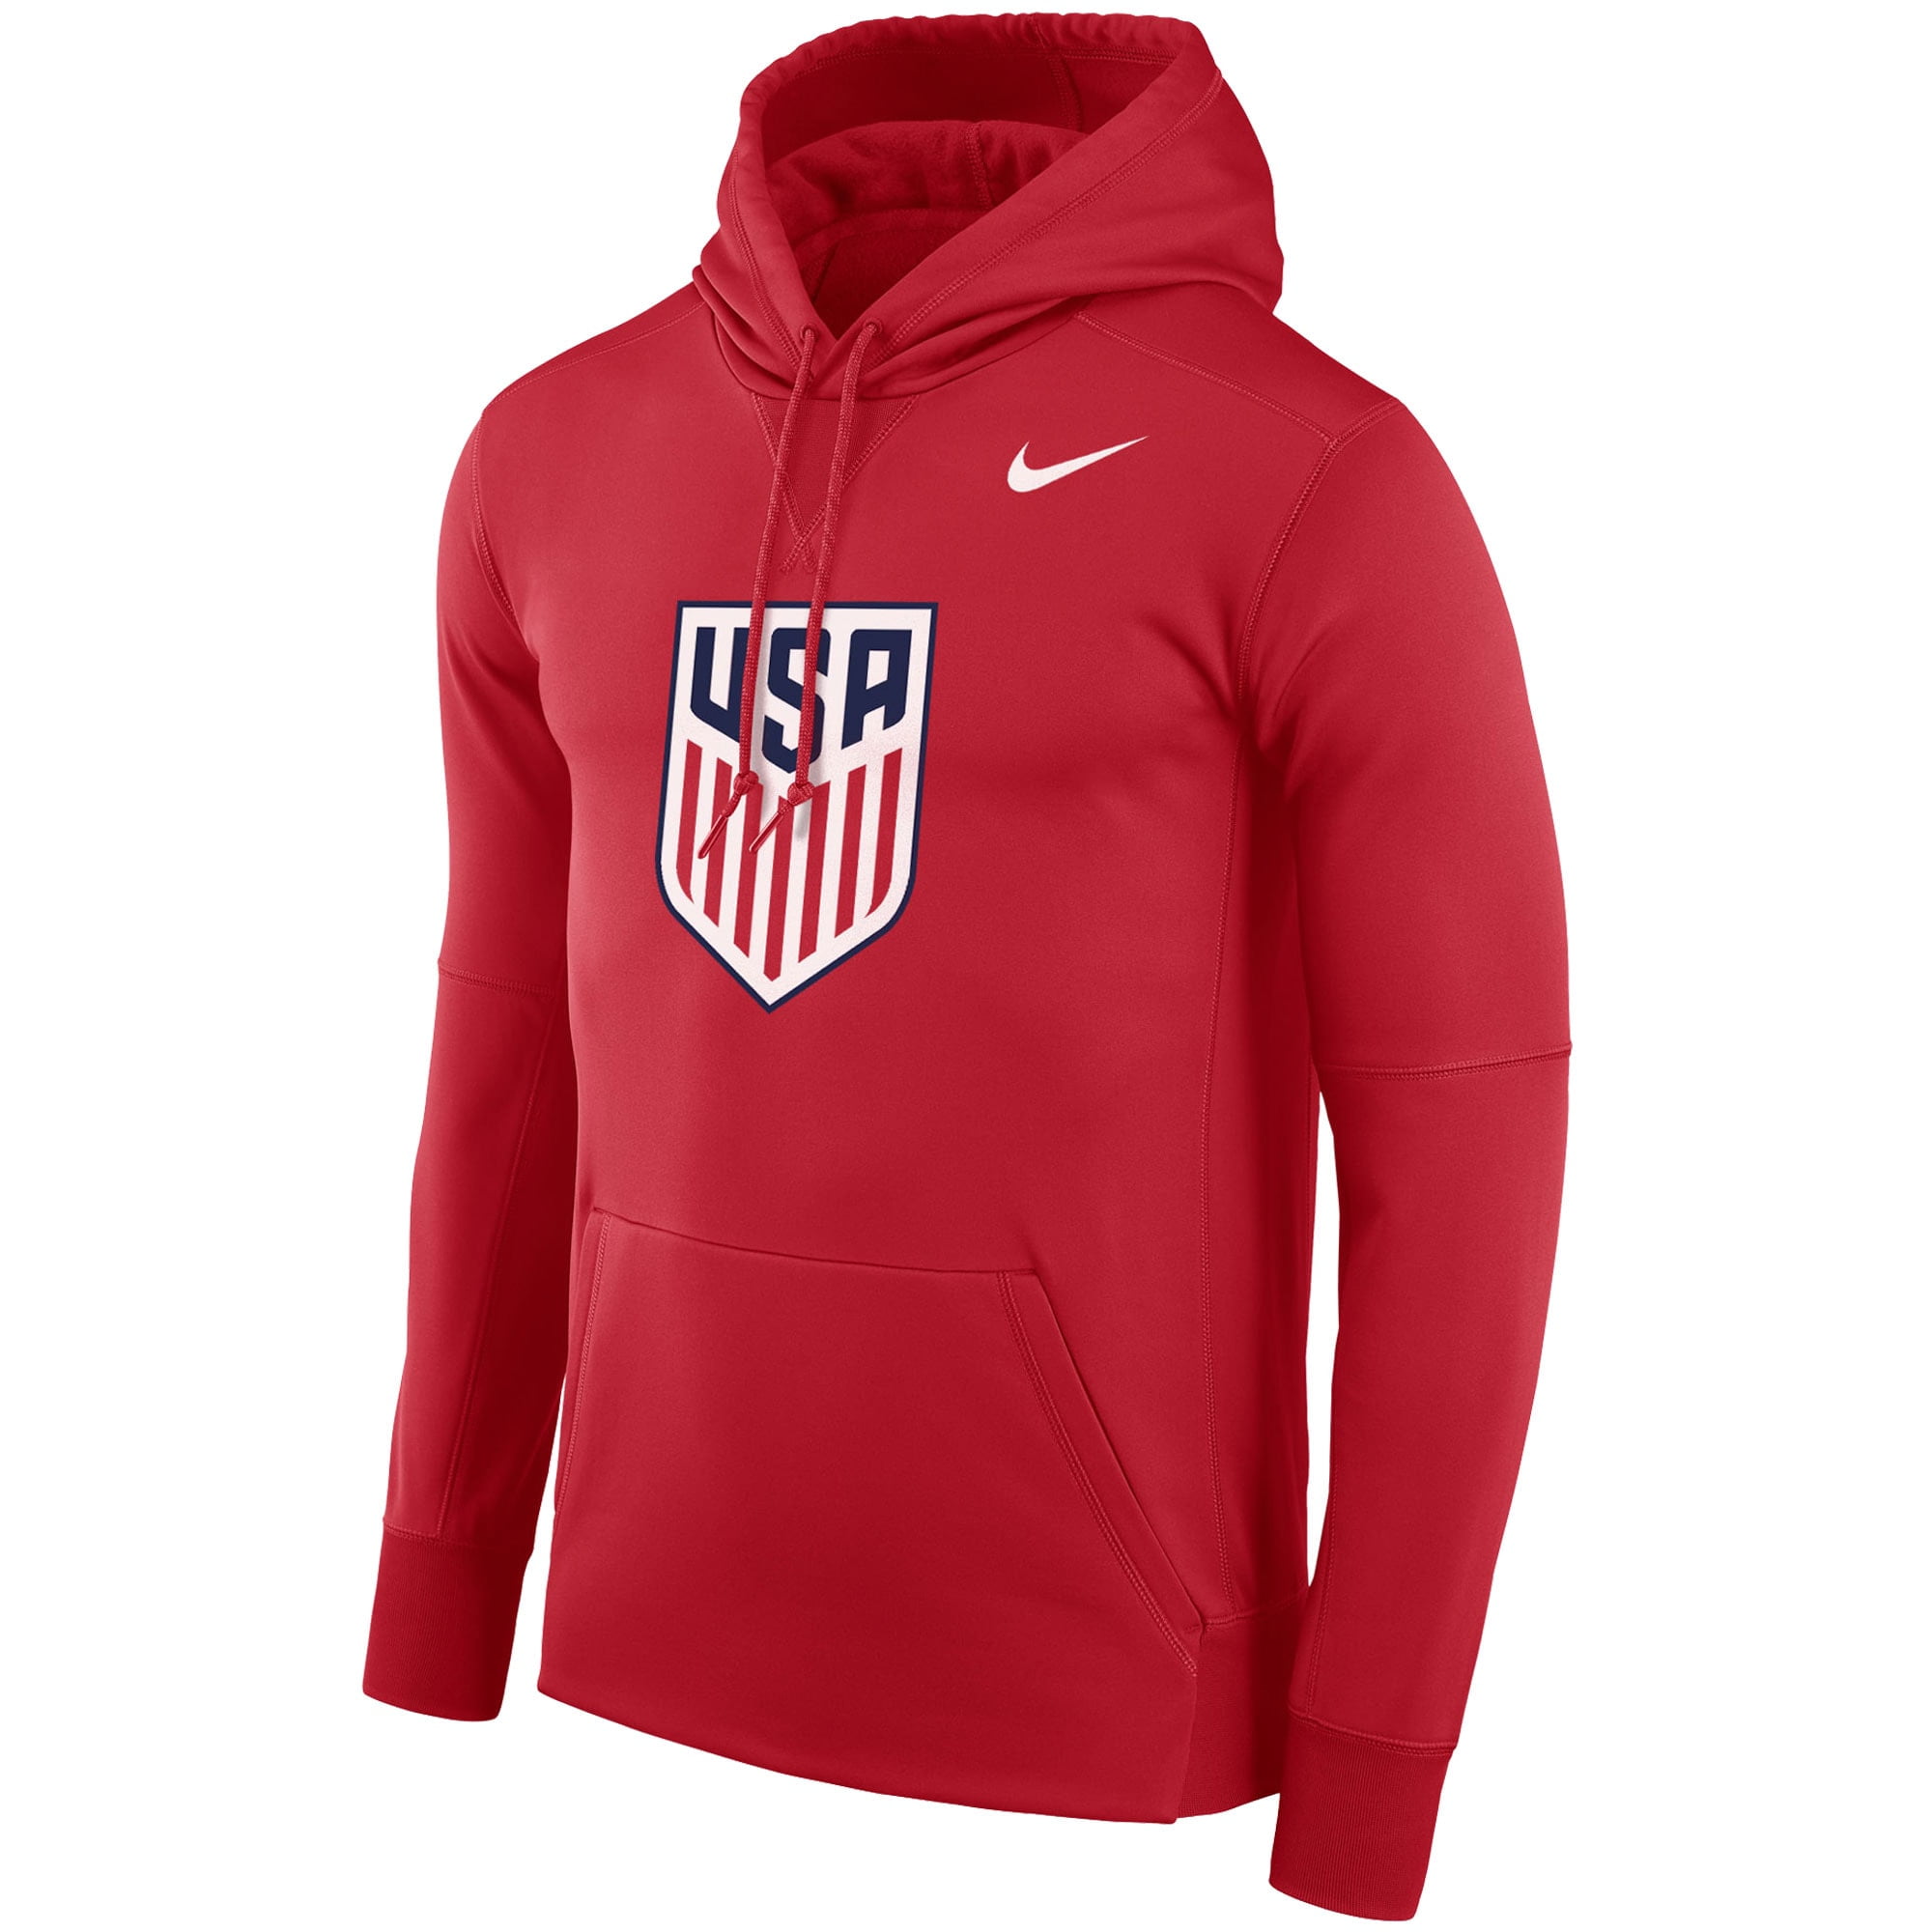 Сайт найк россия. Кофта USA Nike authentic. Кофта ЮСА найк. Кофта найк USA. Найк ЮСА костюм.